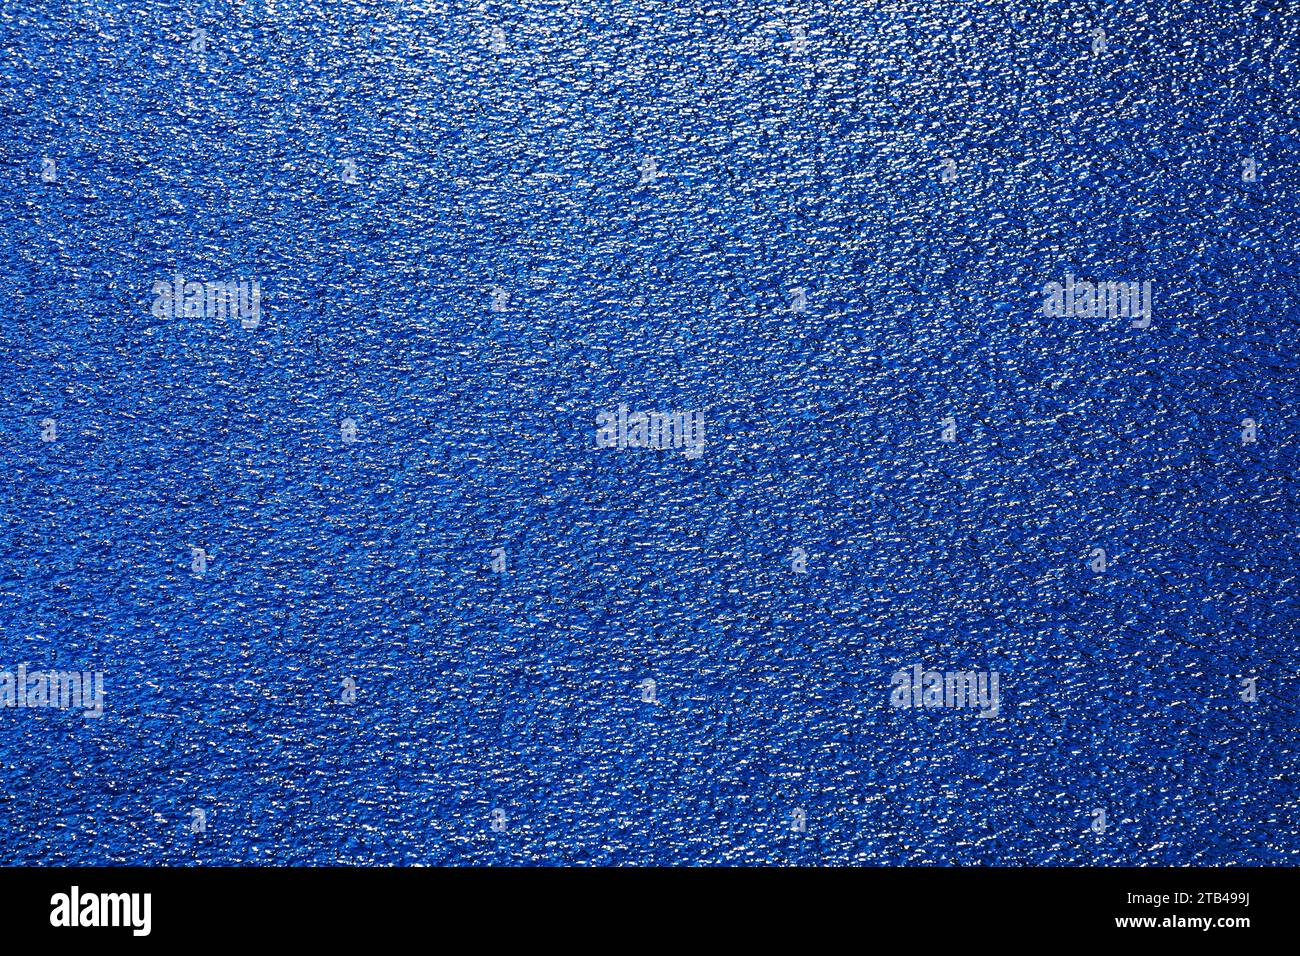 Glitzernde, mattierte Wasseroberfläche, abstrakter blauer Hintergrund, Graphic Elements, Österreich Stockfoto